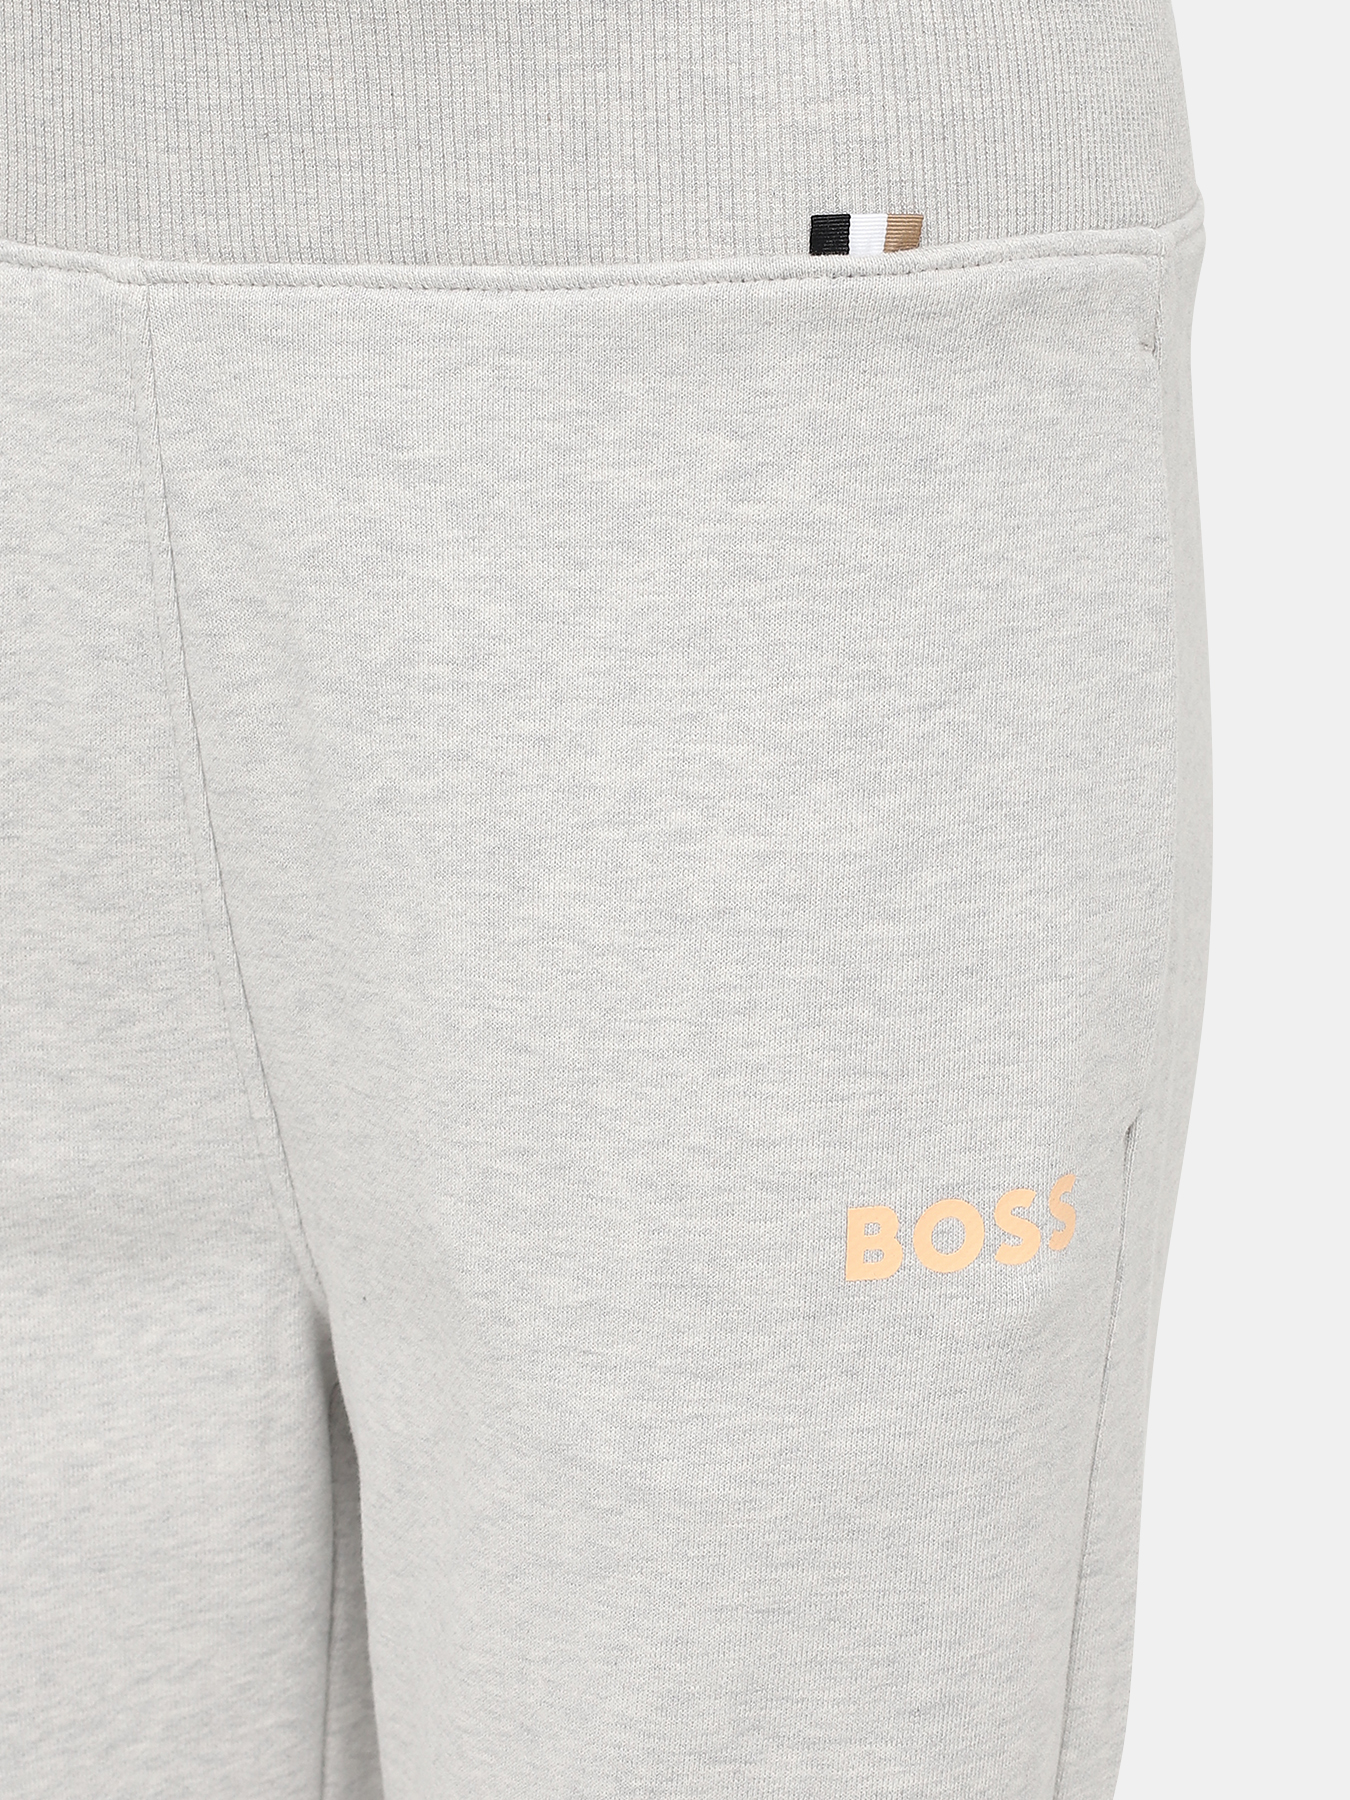 Спортивные брюки Ejoy BOSS 424173-043, цвет серый, размер 44-46 - фото 2